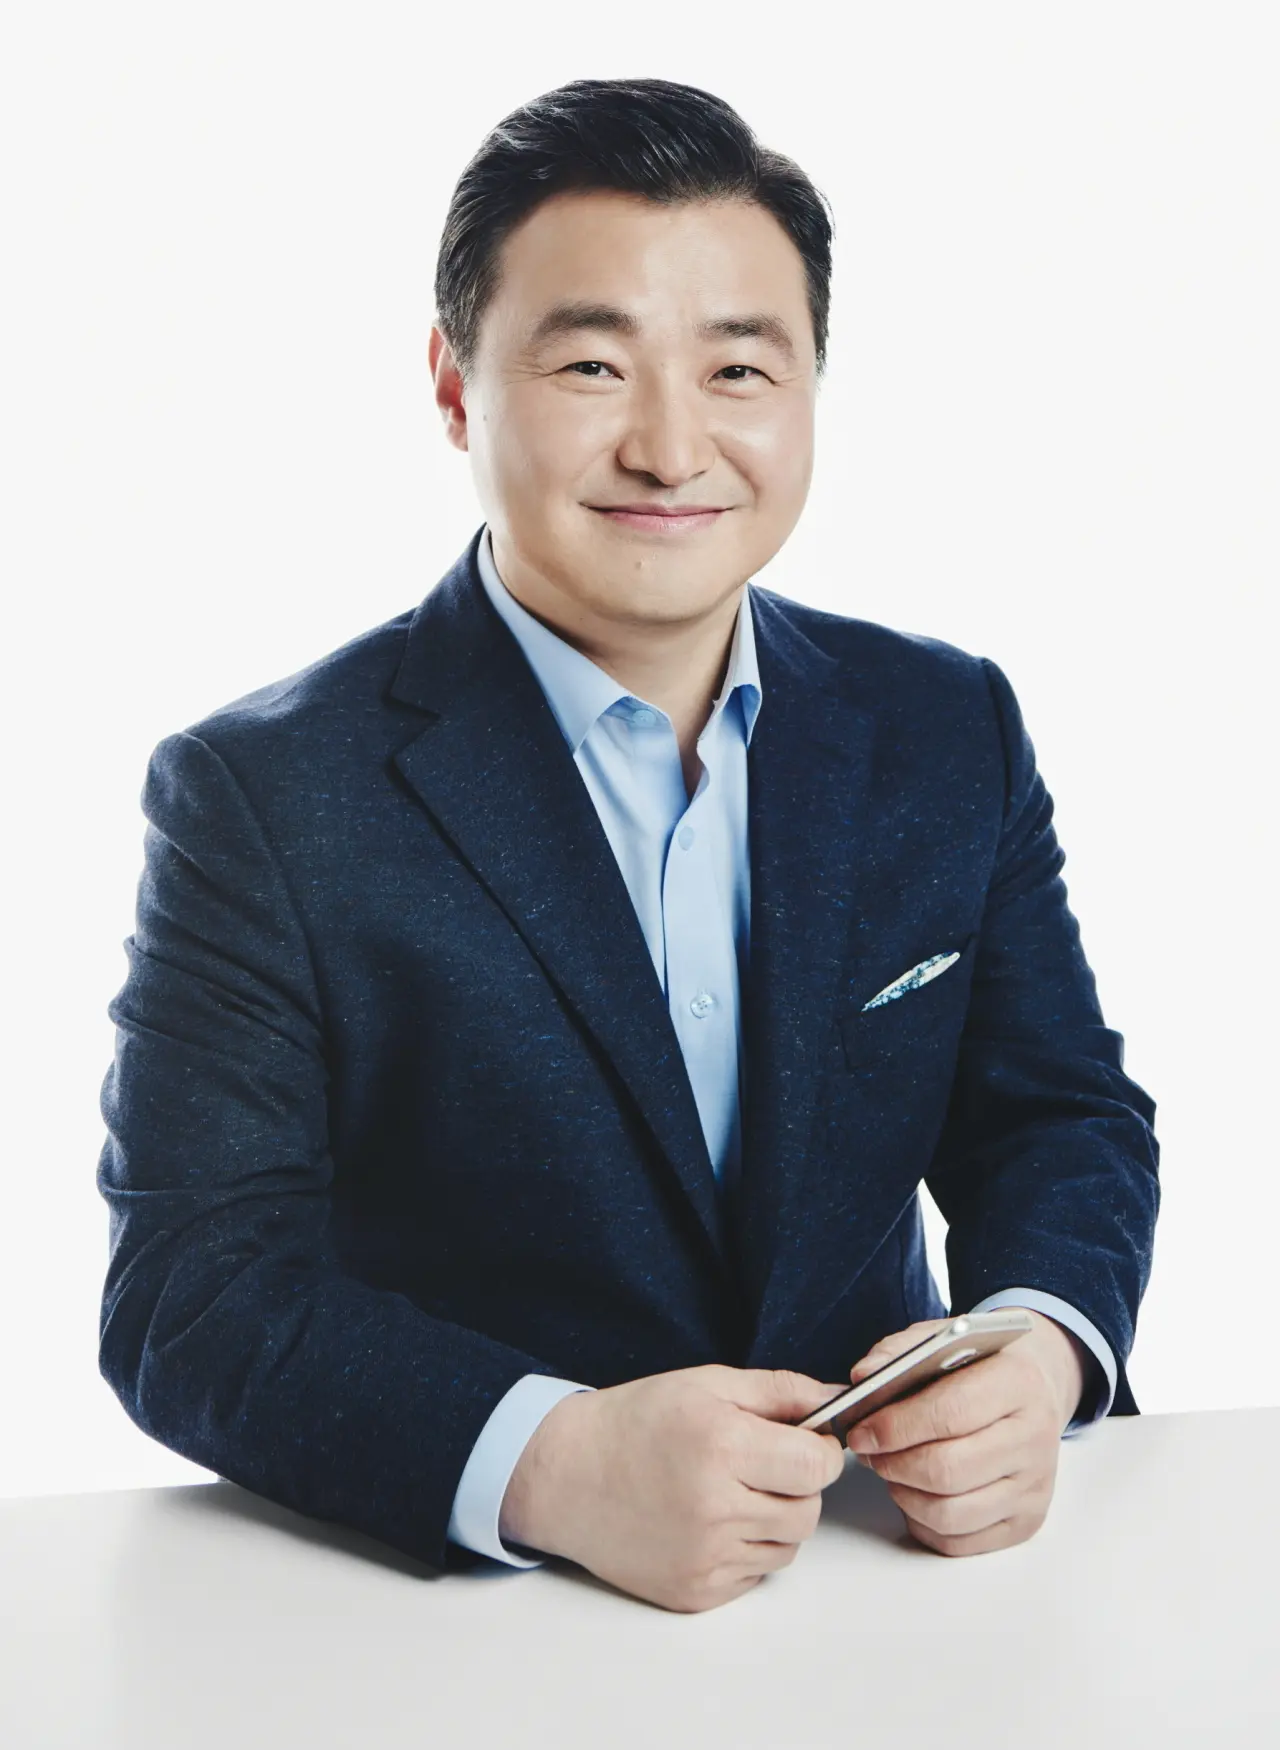  Roh Tae-moon es el nuevo director de Samsung Mobile